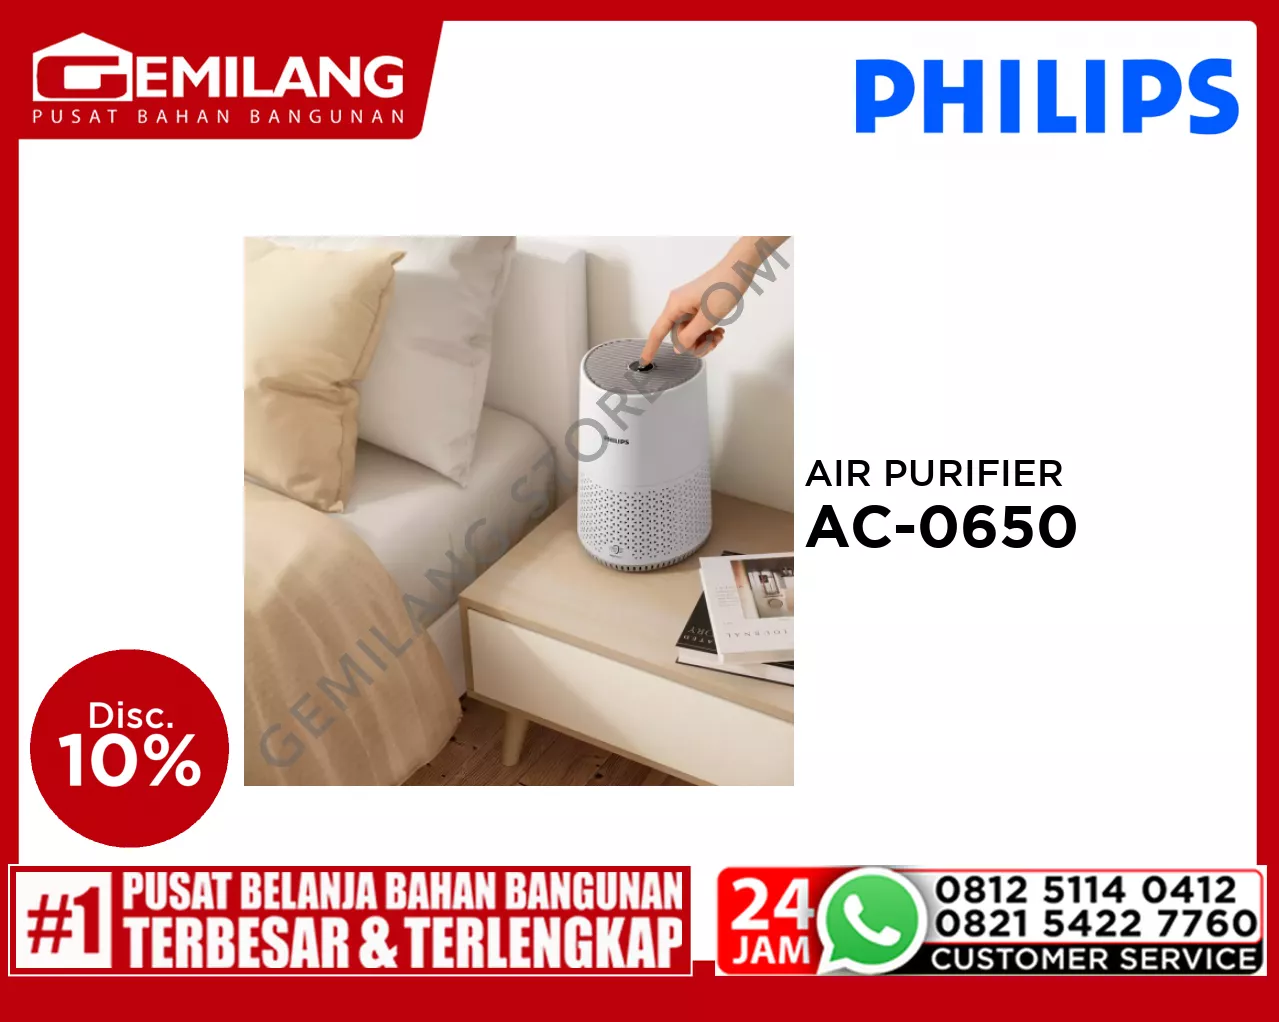 PHILIPS AIR PURIFIER AC-0650